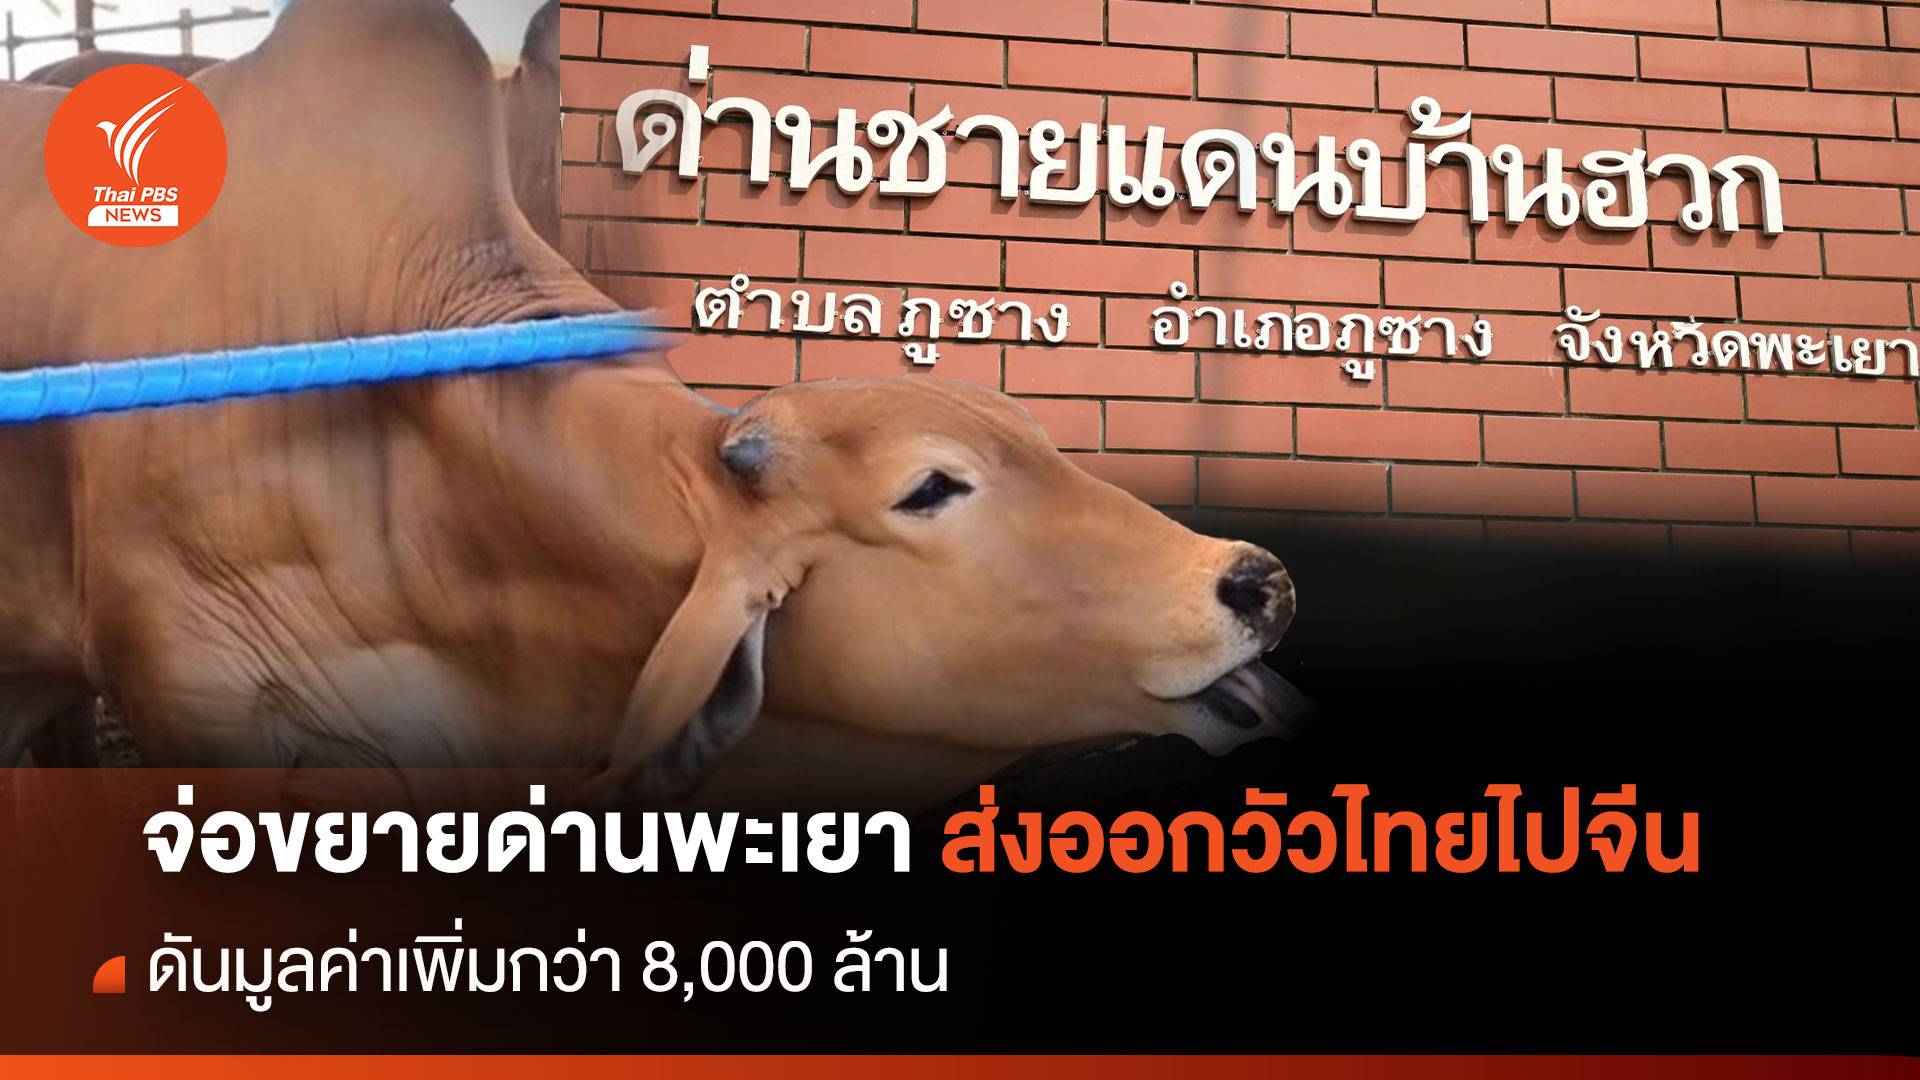 จ่อขยายด่านพะเยา ส่งออกวัวไทยไปจีน ดันมูลค่าเพิ่ม 8,000 ล้าน